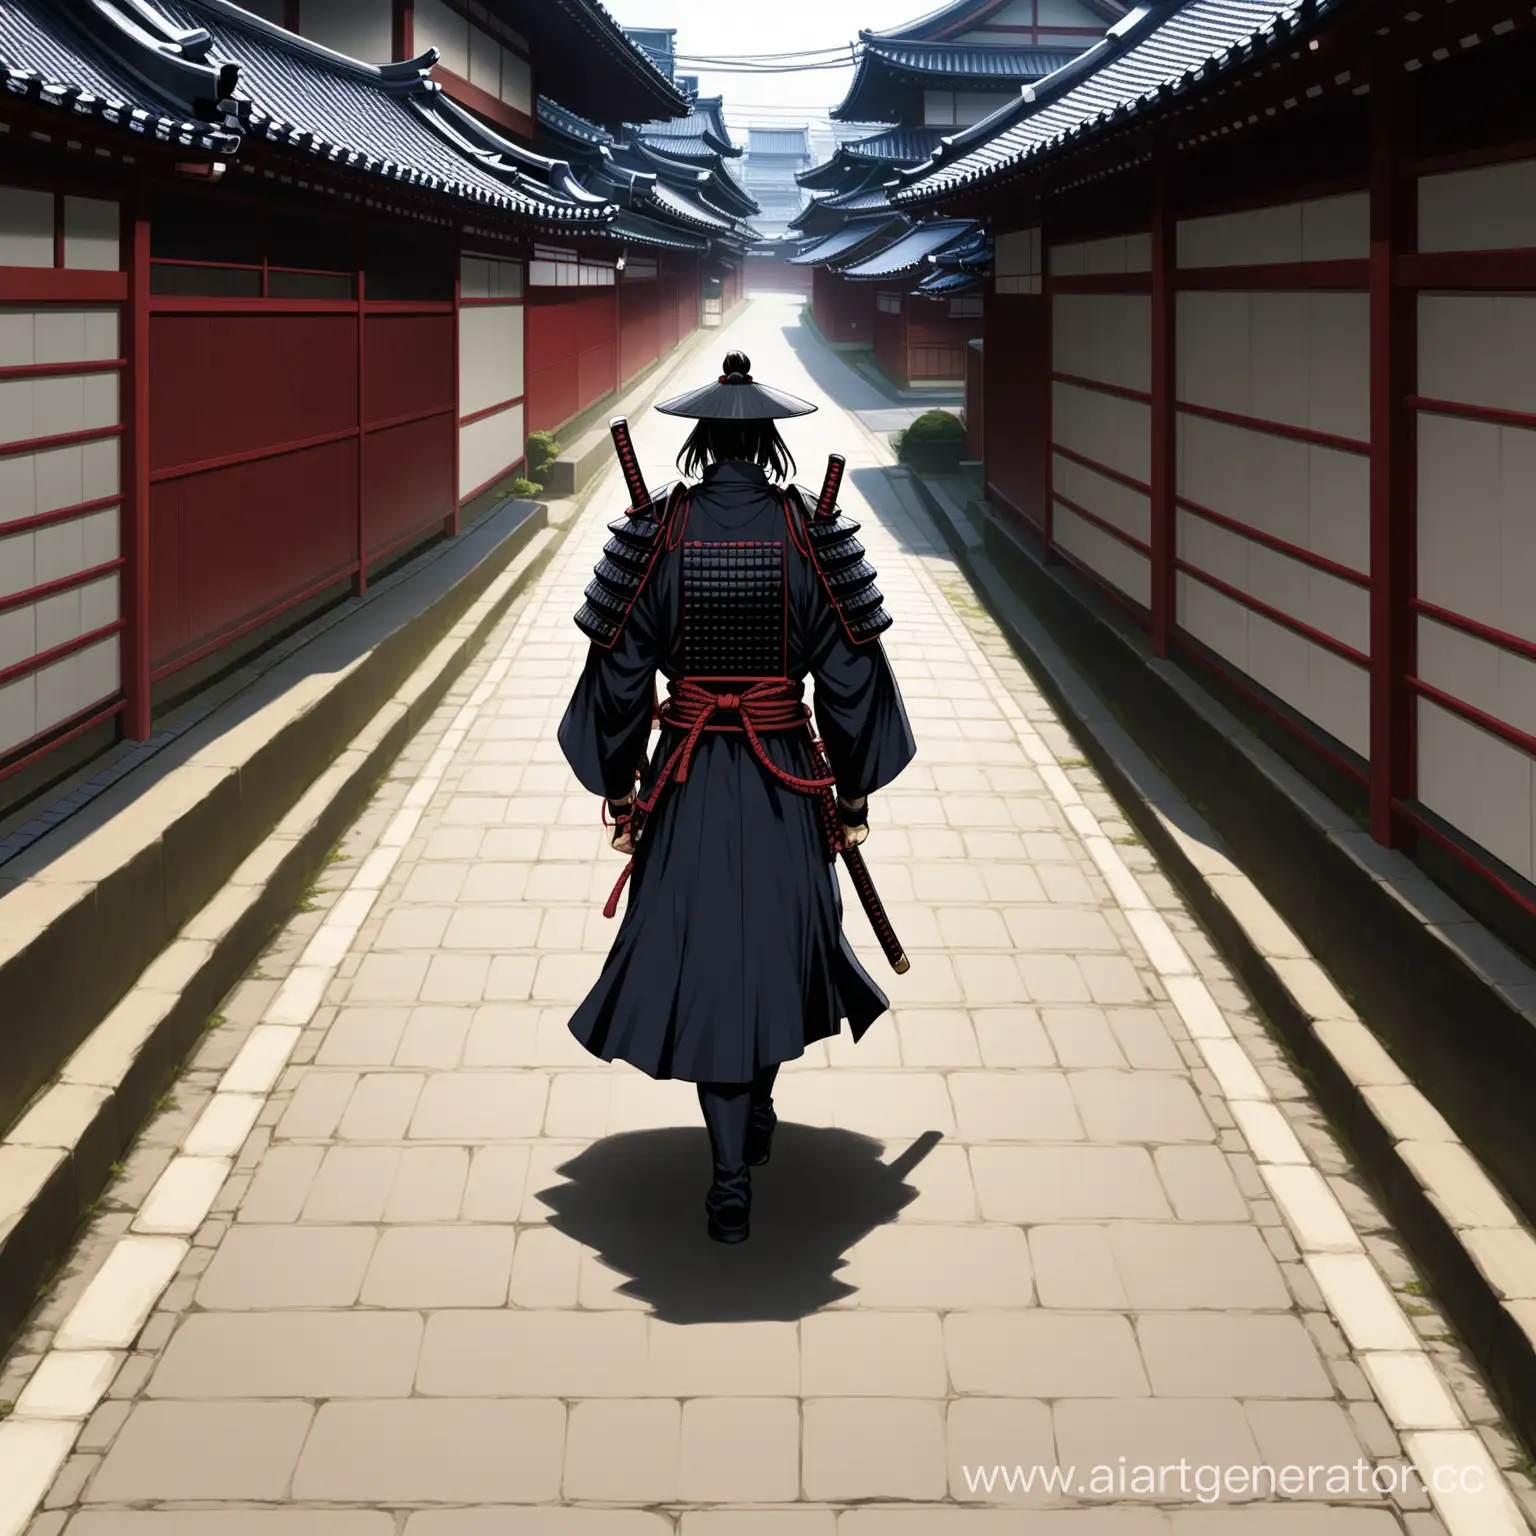 токийский путь самурая размер 640 на 360 пикселей